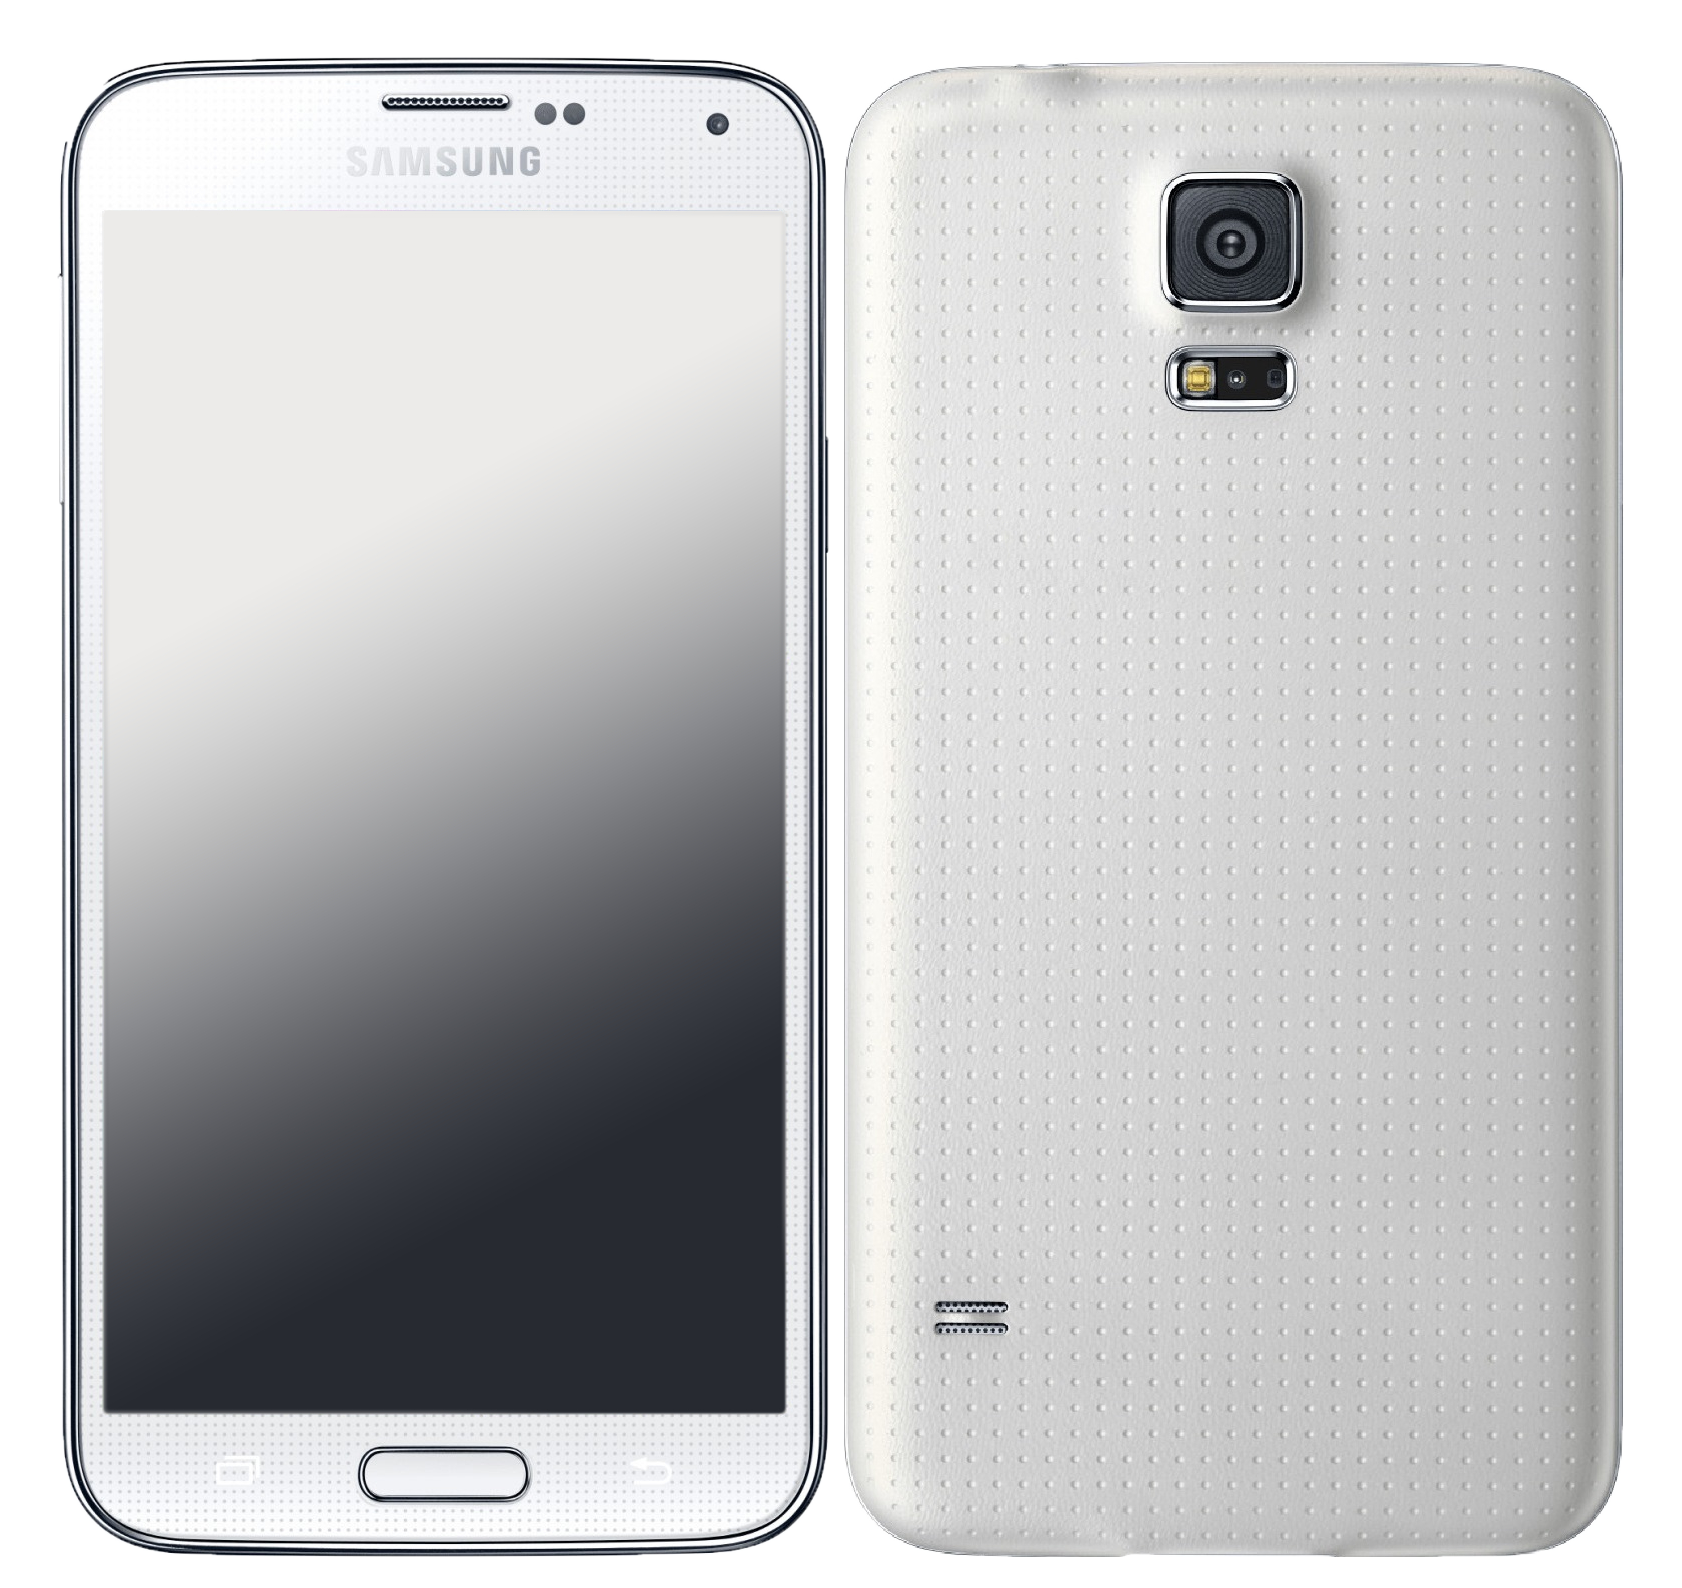 Samsung Galaxy s5 16 GB weiß - Ohne Vertrag